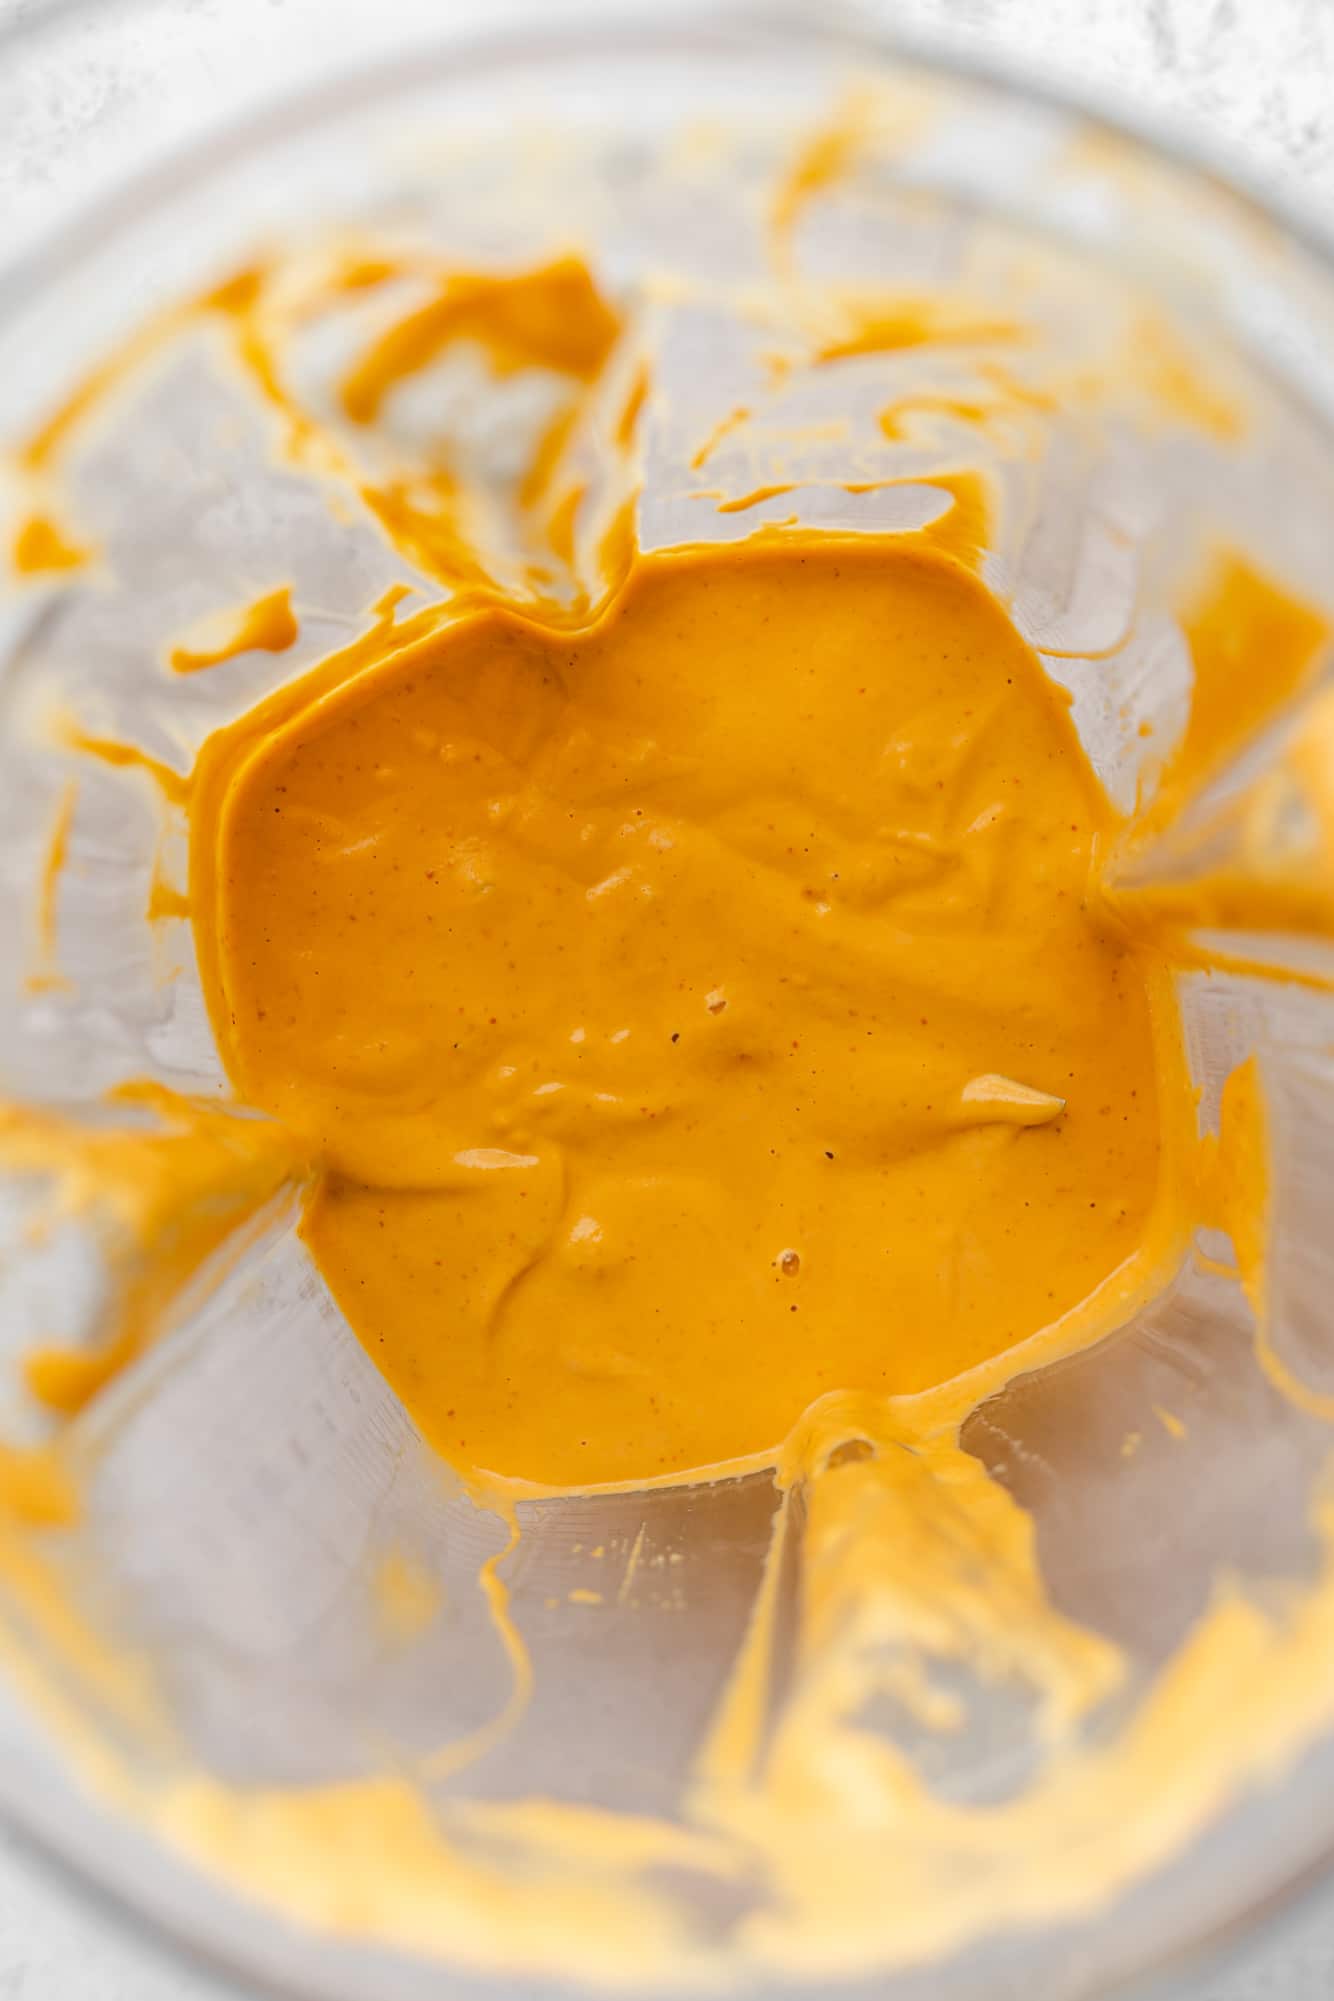 blended orange chipotle sauce in a blender.